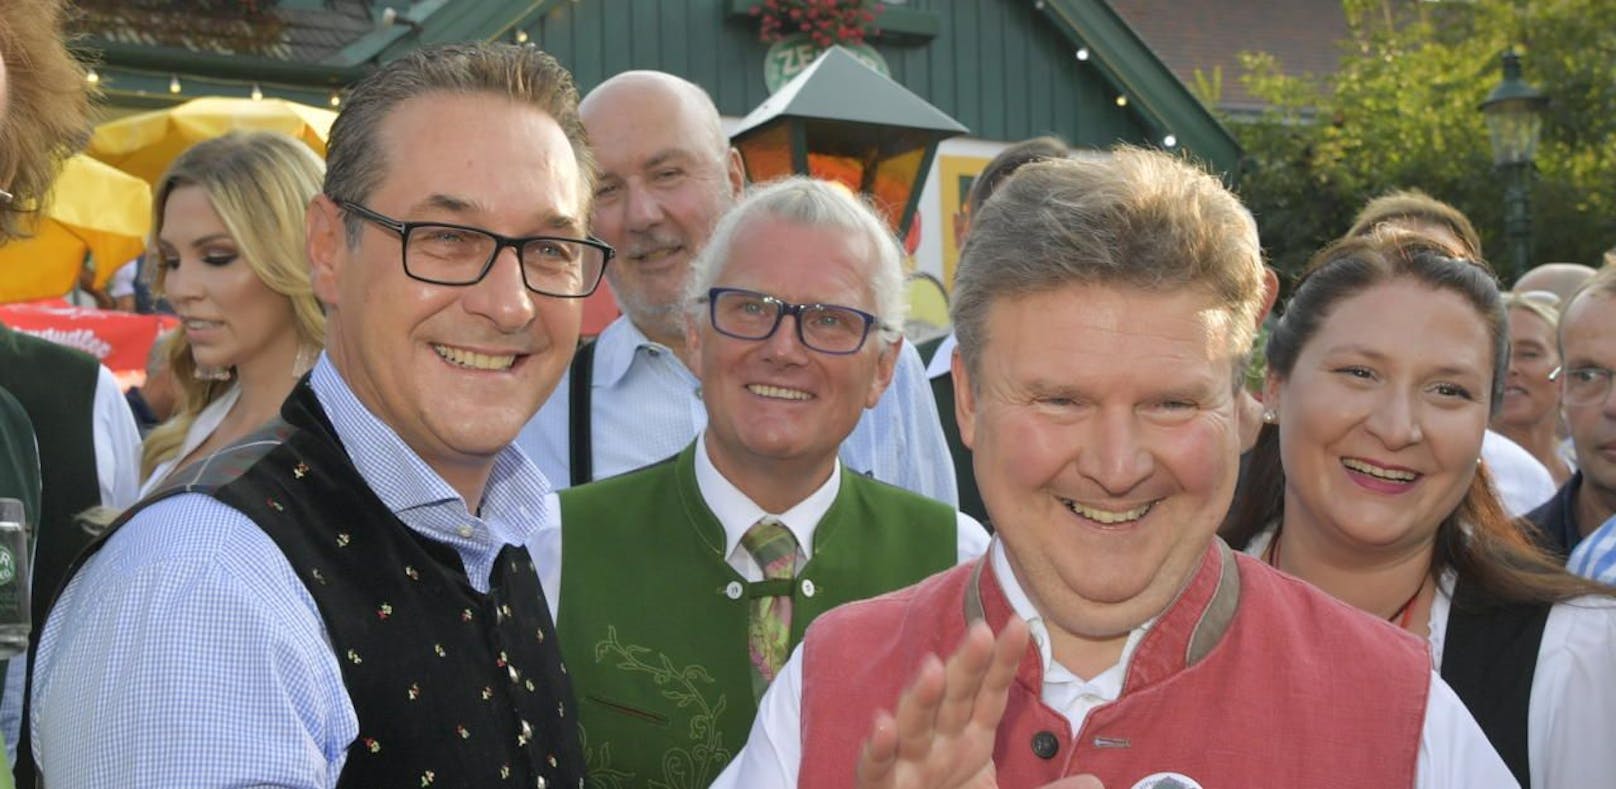 Auf diesem Foto war noch alles in Ordnung zwischen den beiden: Heinz-Christian Strache (FPÖ) und Bürgermeister Michael Ludwig (SPÖ) bei der Eröffnung des Neustifter Kirtags am 17.08.2018.